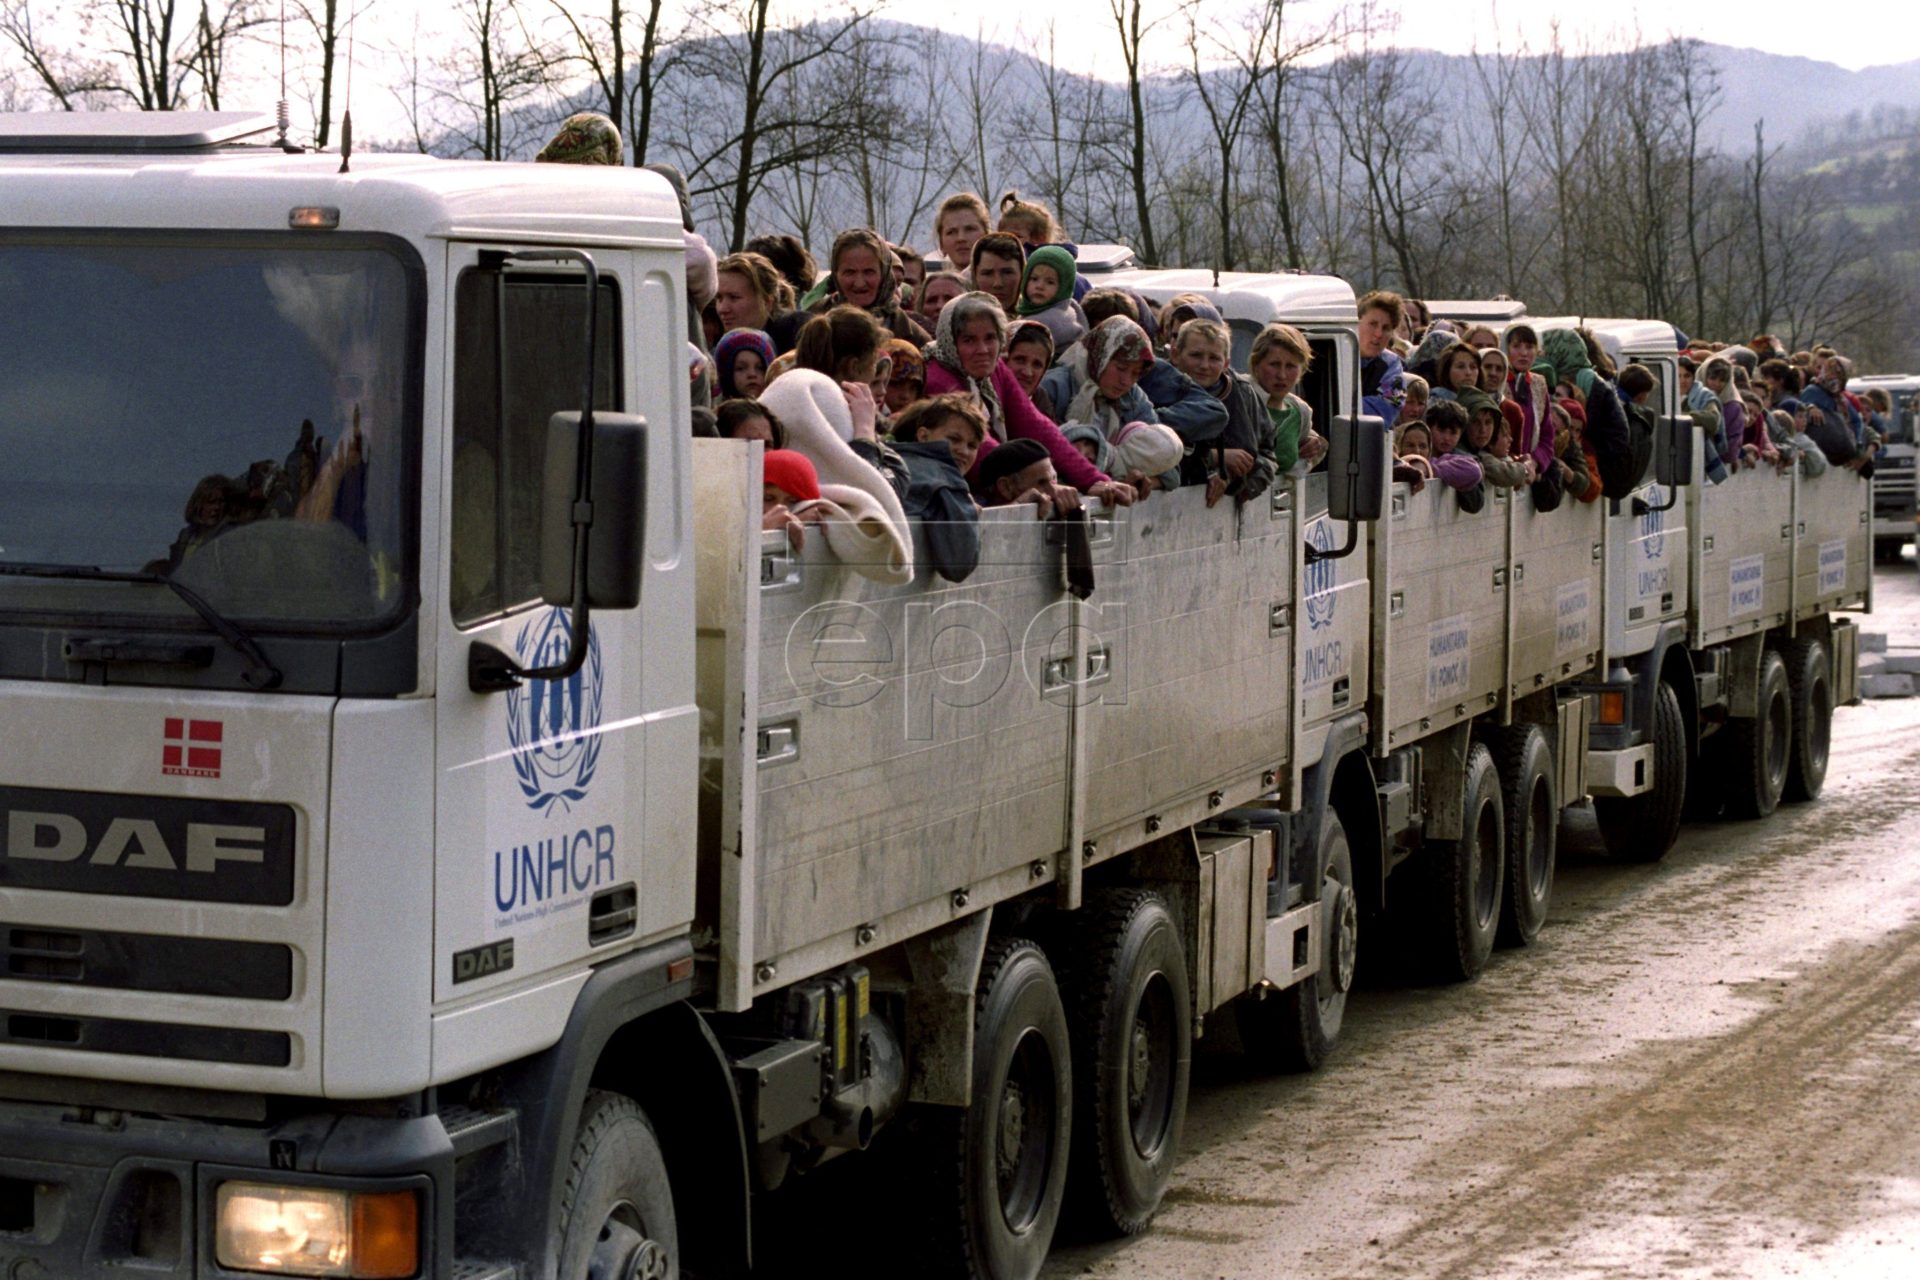 Gezocht tijdens het beleg van Sarajevo